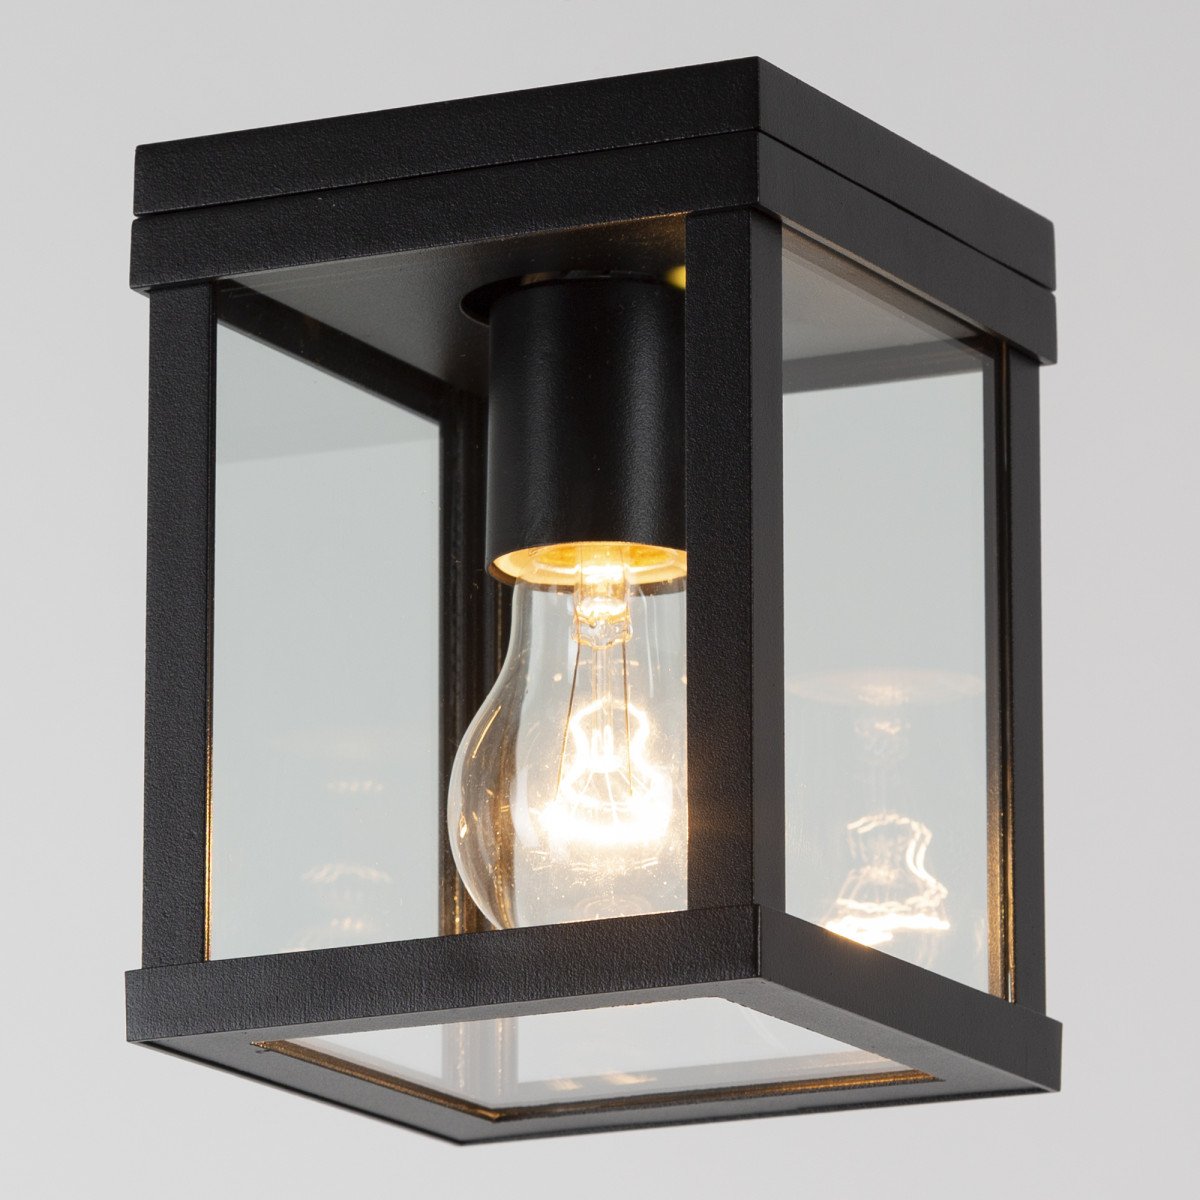 plafondlamp Jersey, buitenverlichting, plafondverlichting van KS Verlichting, een strak klassiek zwarte buitenlamp van top kwaliteit, merk KS Verlichting